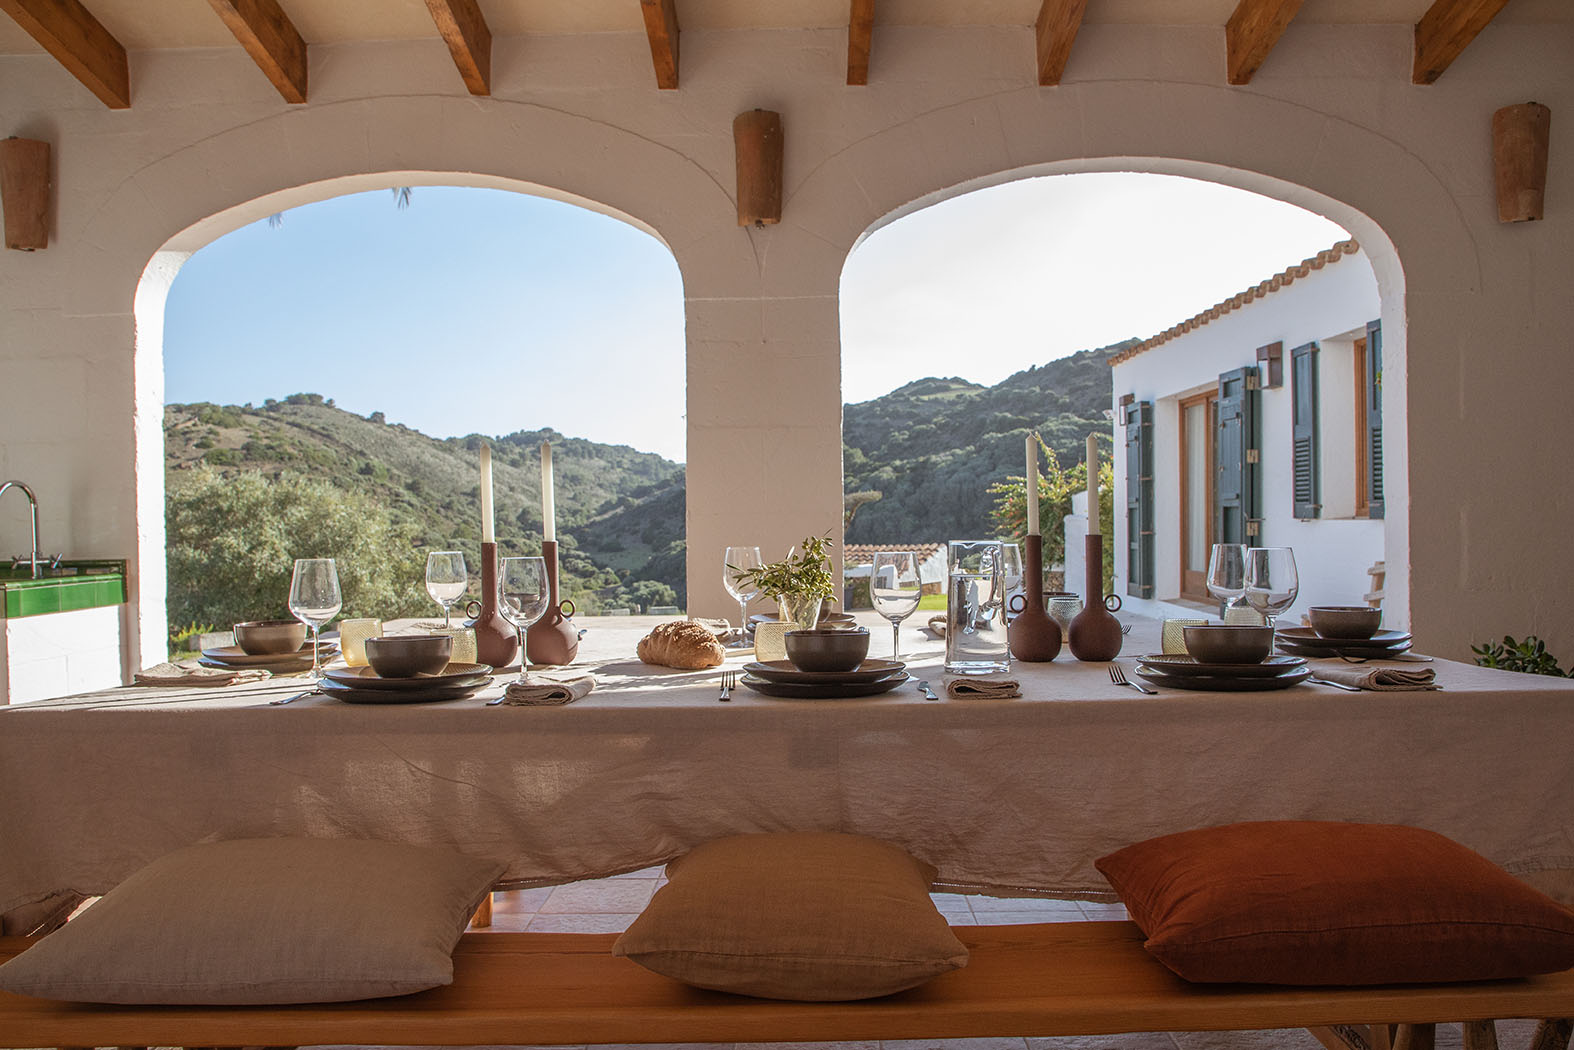 Descubra un oasis de lujo y relajación en la rústica zona norte de Menorca en esta elegante y apartada casa de campo.